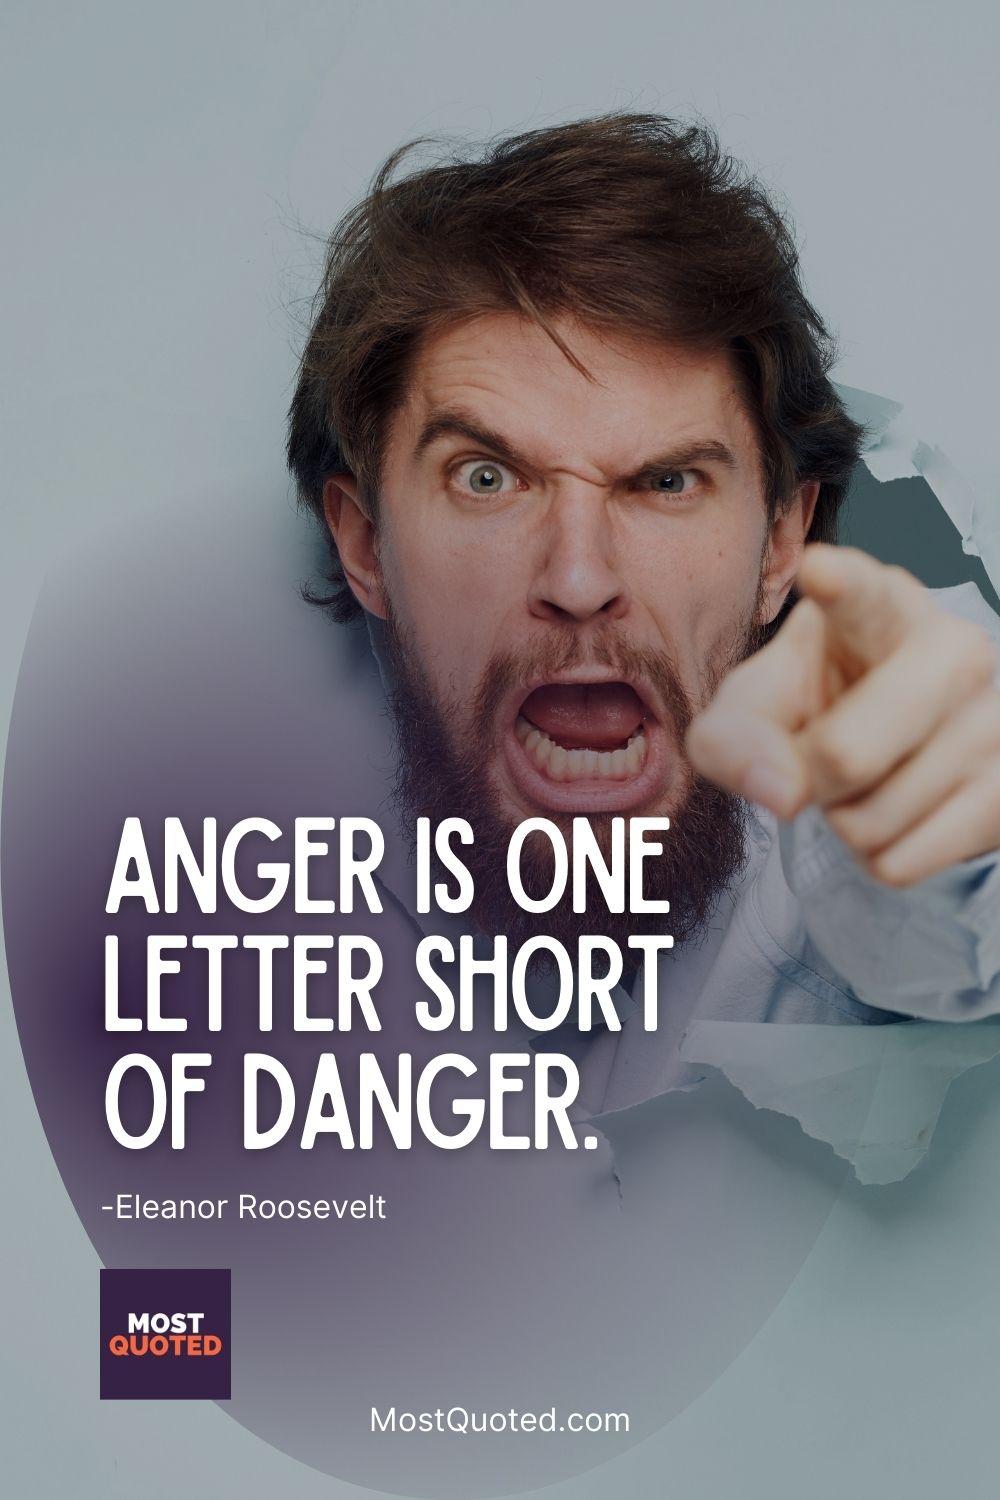 Anger is one letter short of danger. - Eleanor Roosevelt